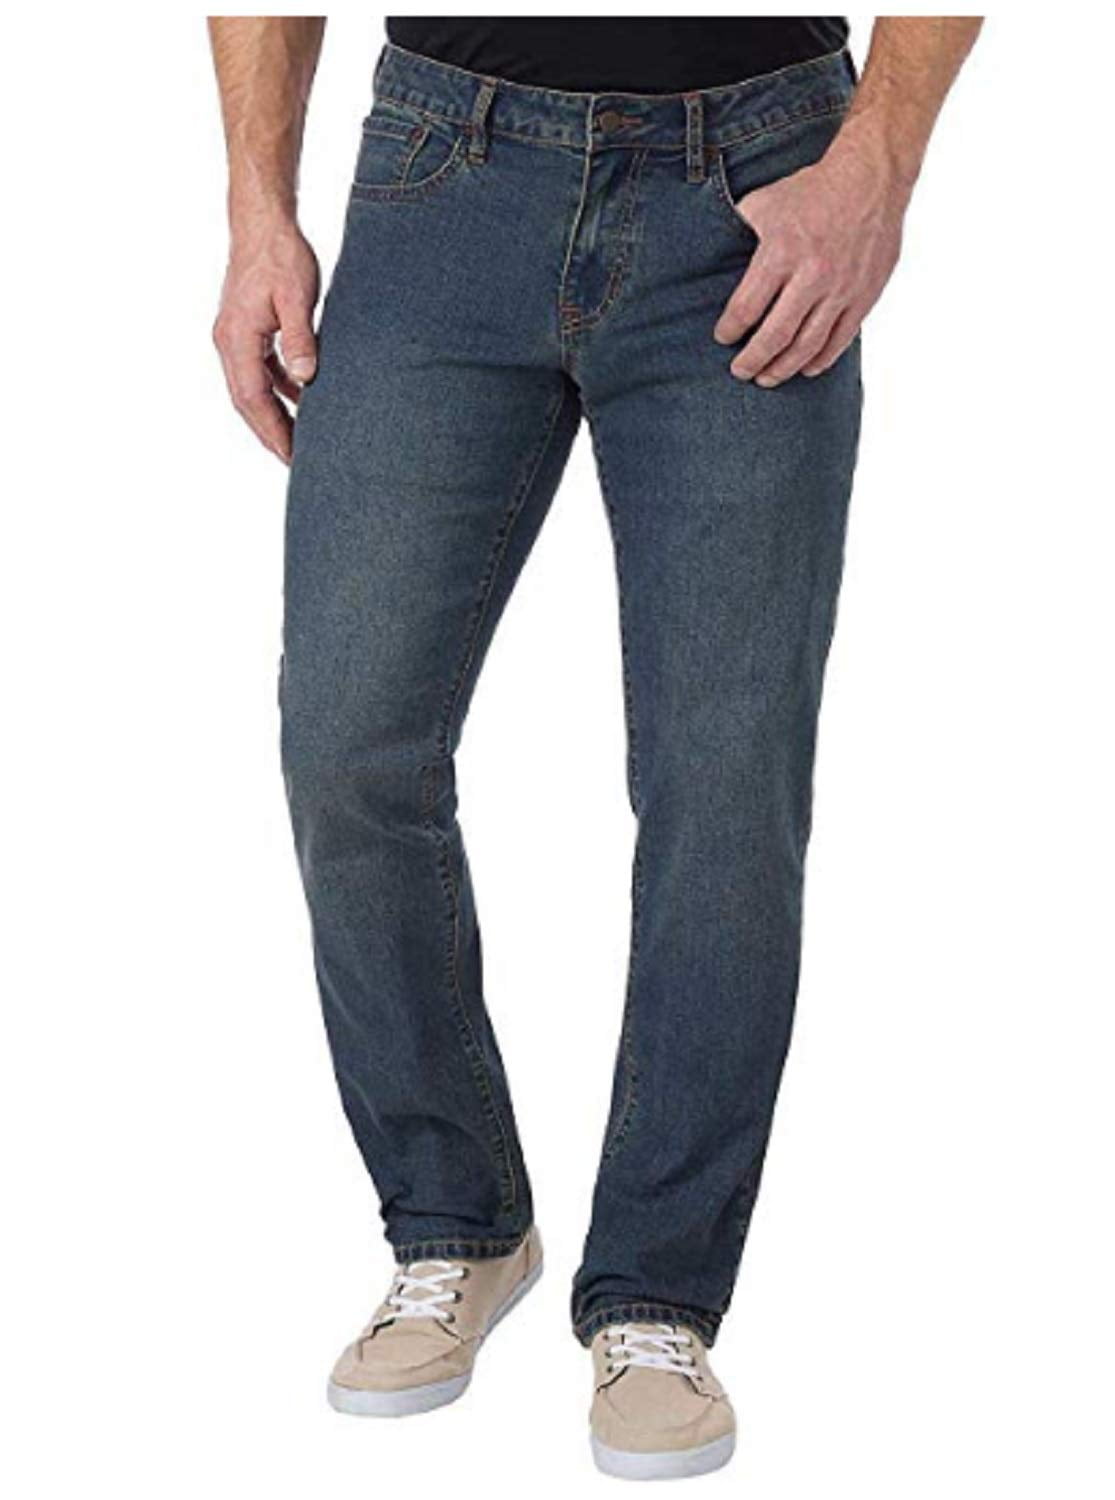 IZOD Men's Comfort Stretch Straight Fit Jeans (Lexington, 36x34 ...